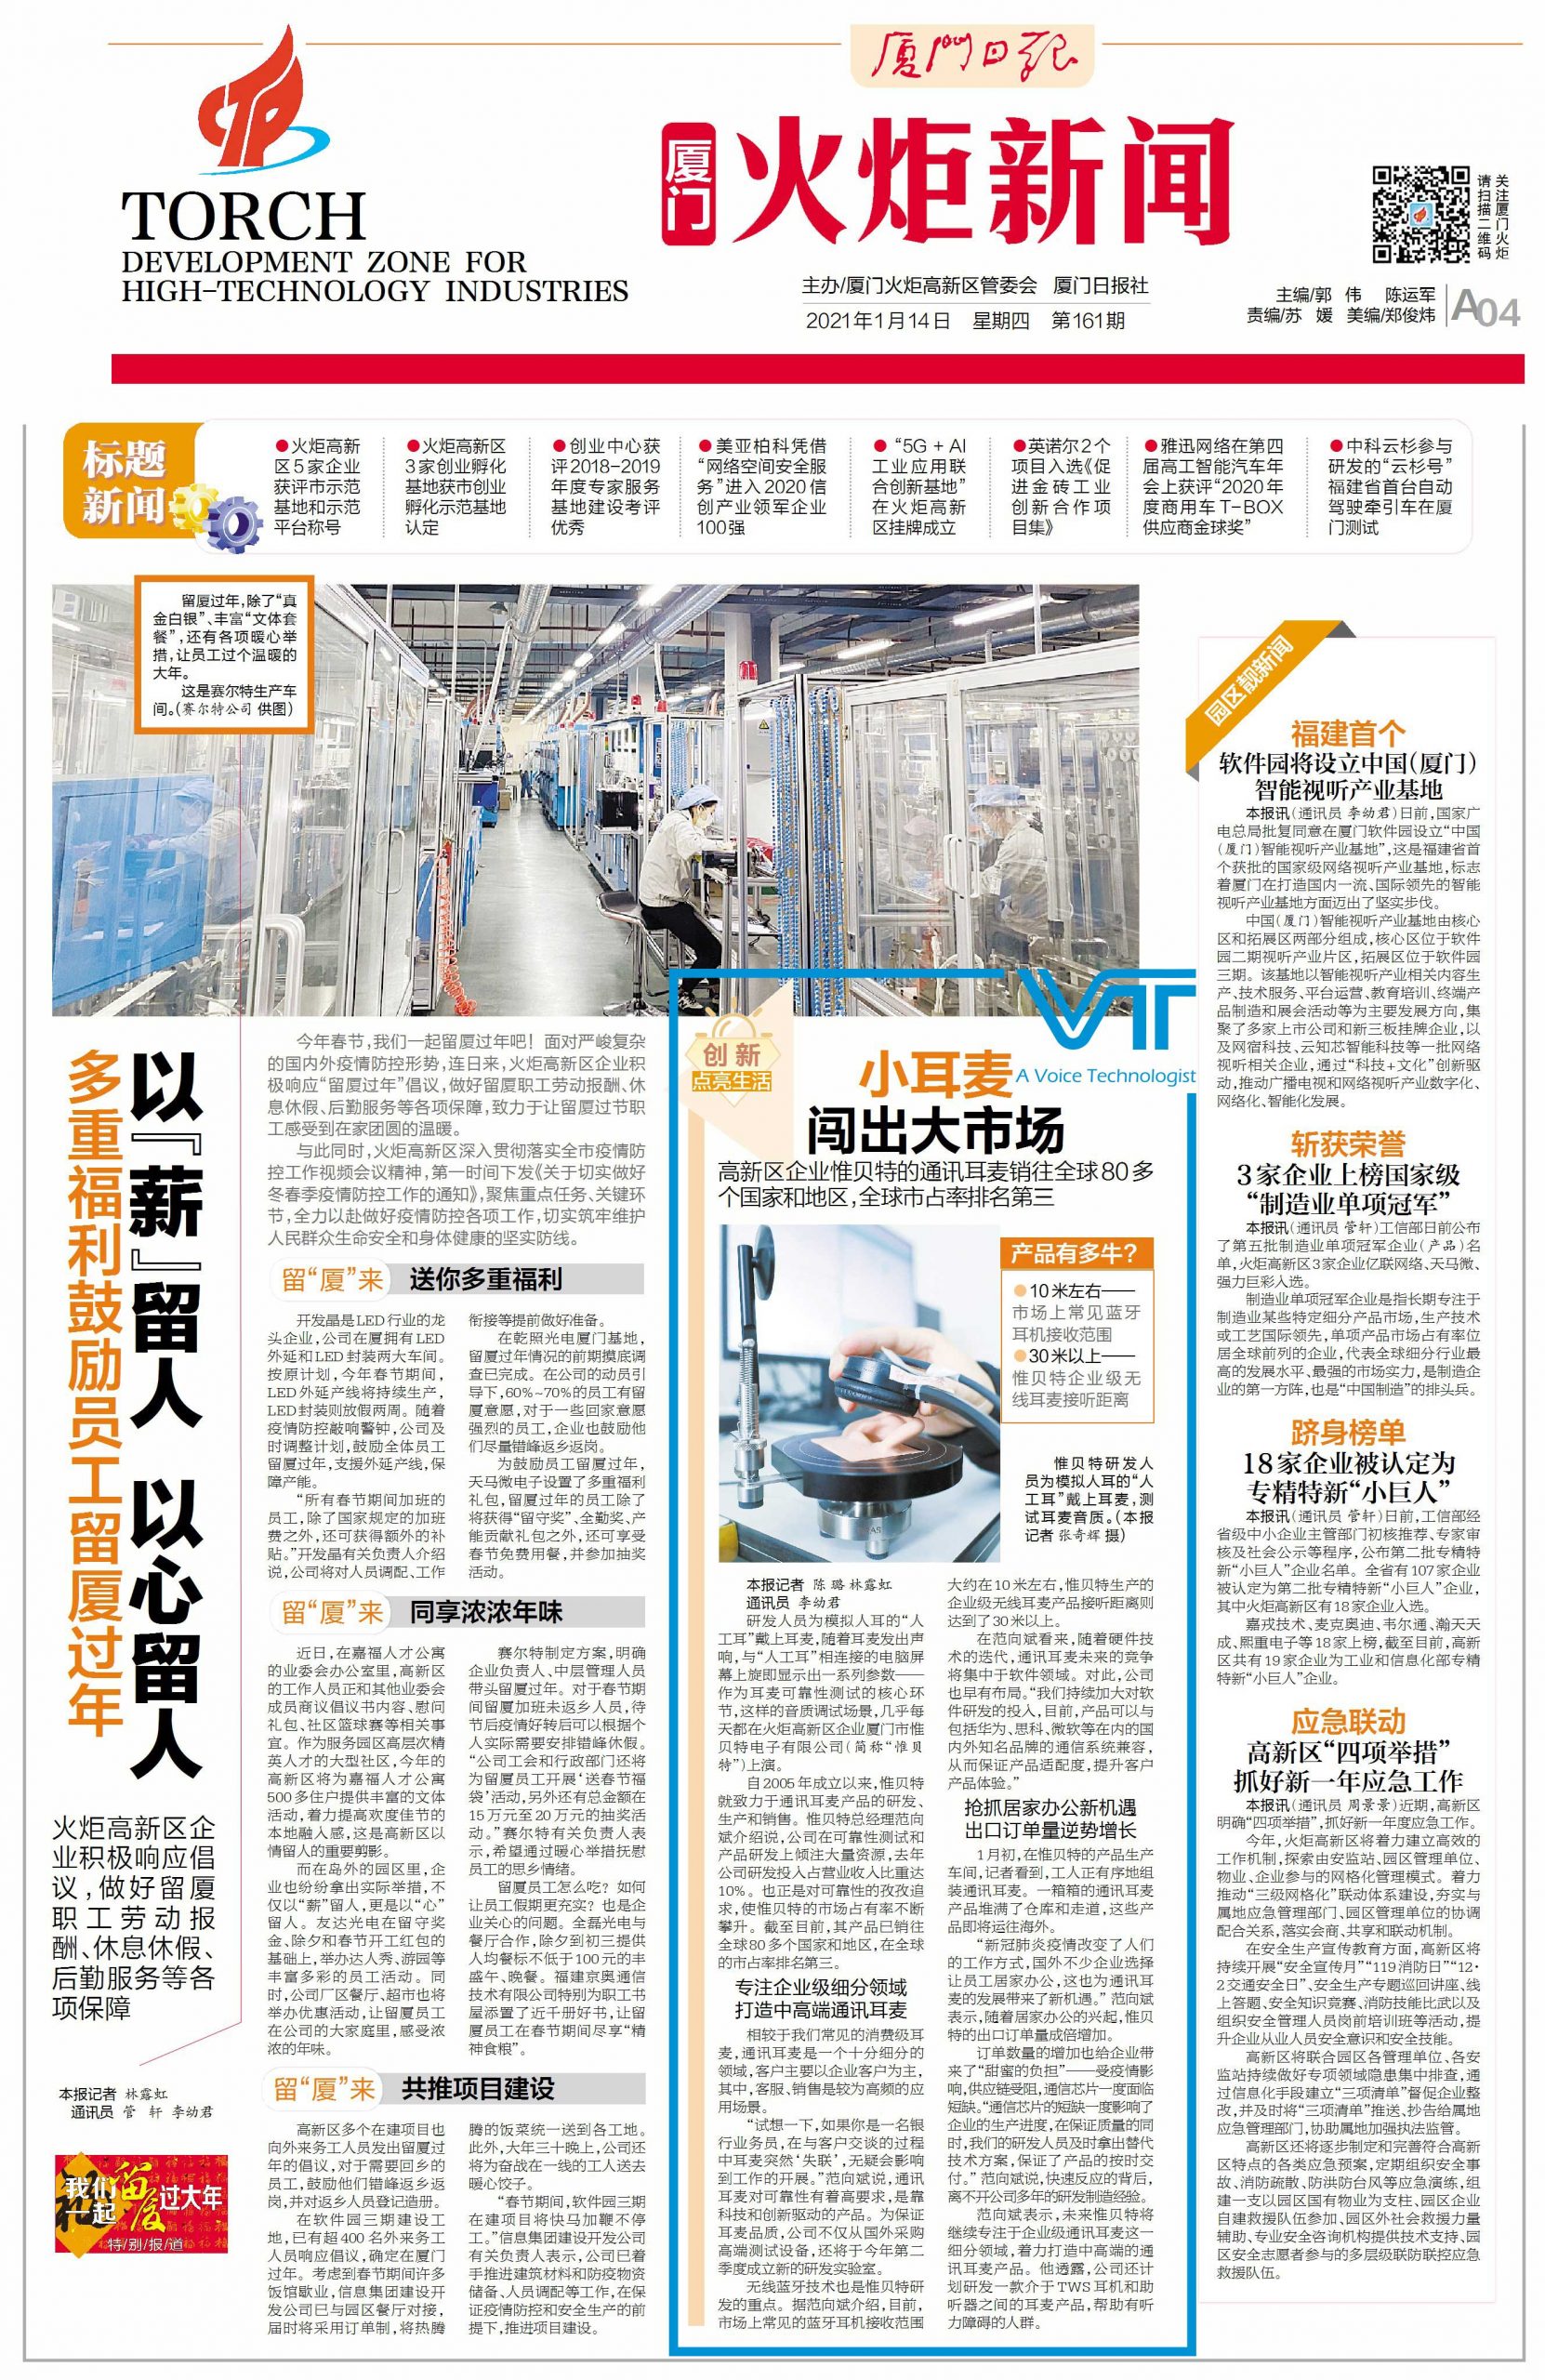 История Flash News-VT была опубликована на основных китайских сетевых платформах!